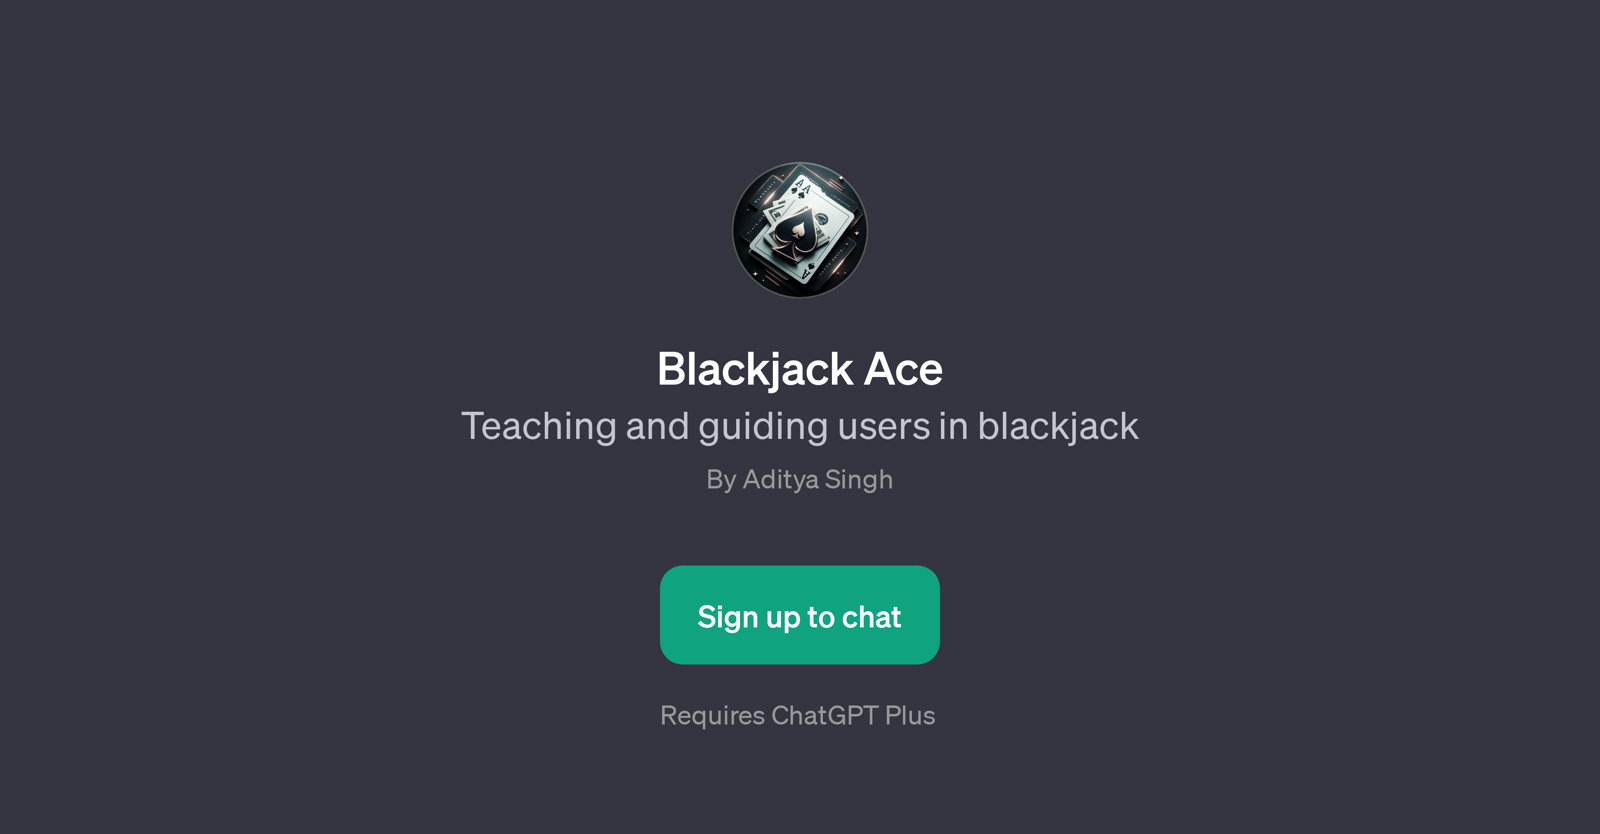 Blackjack Ace website